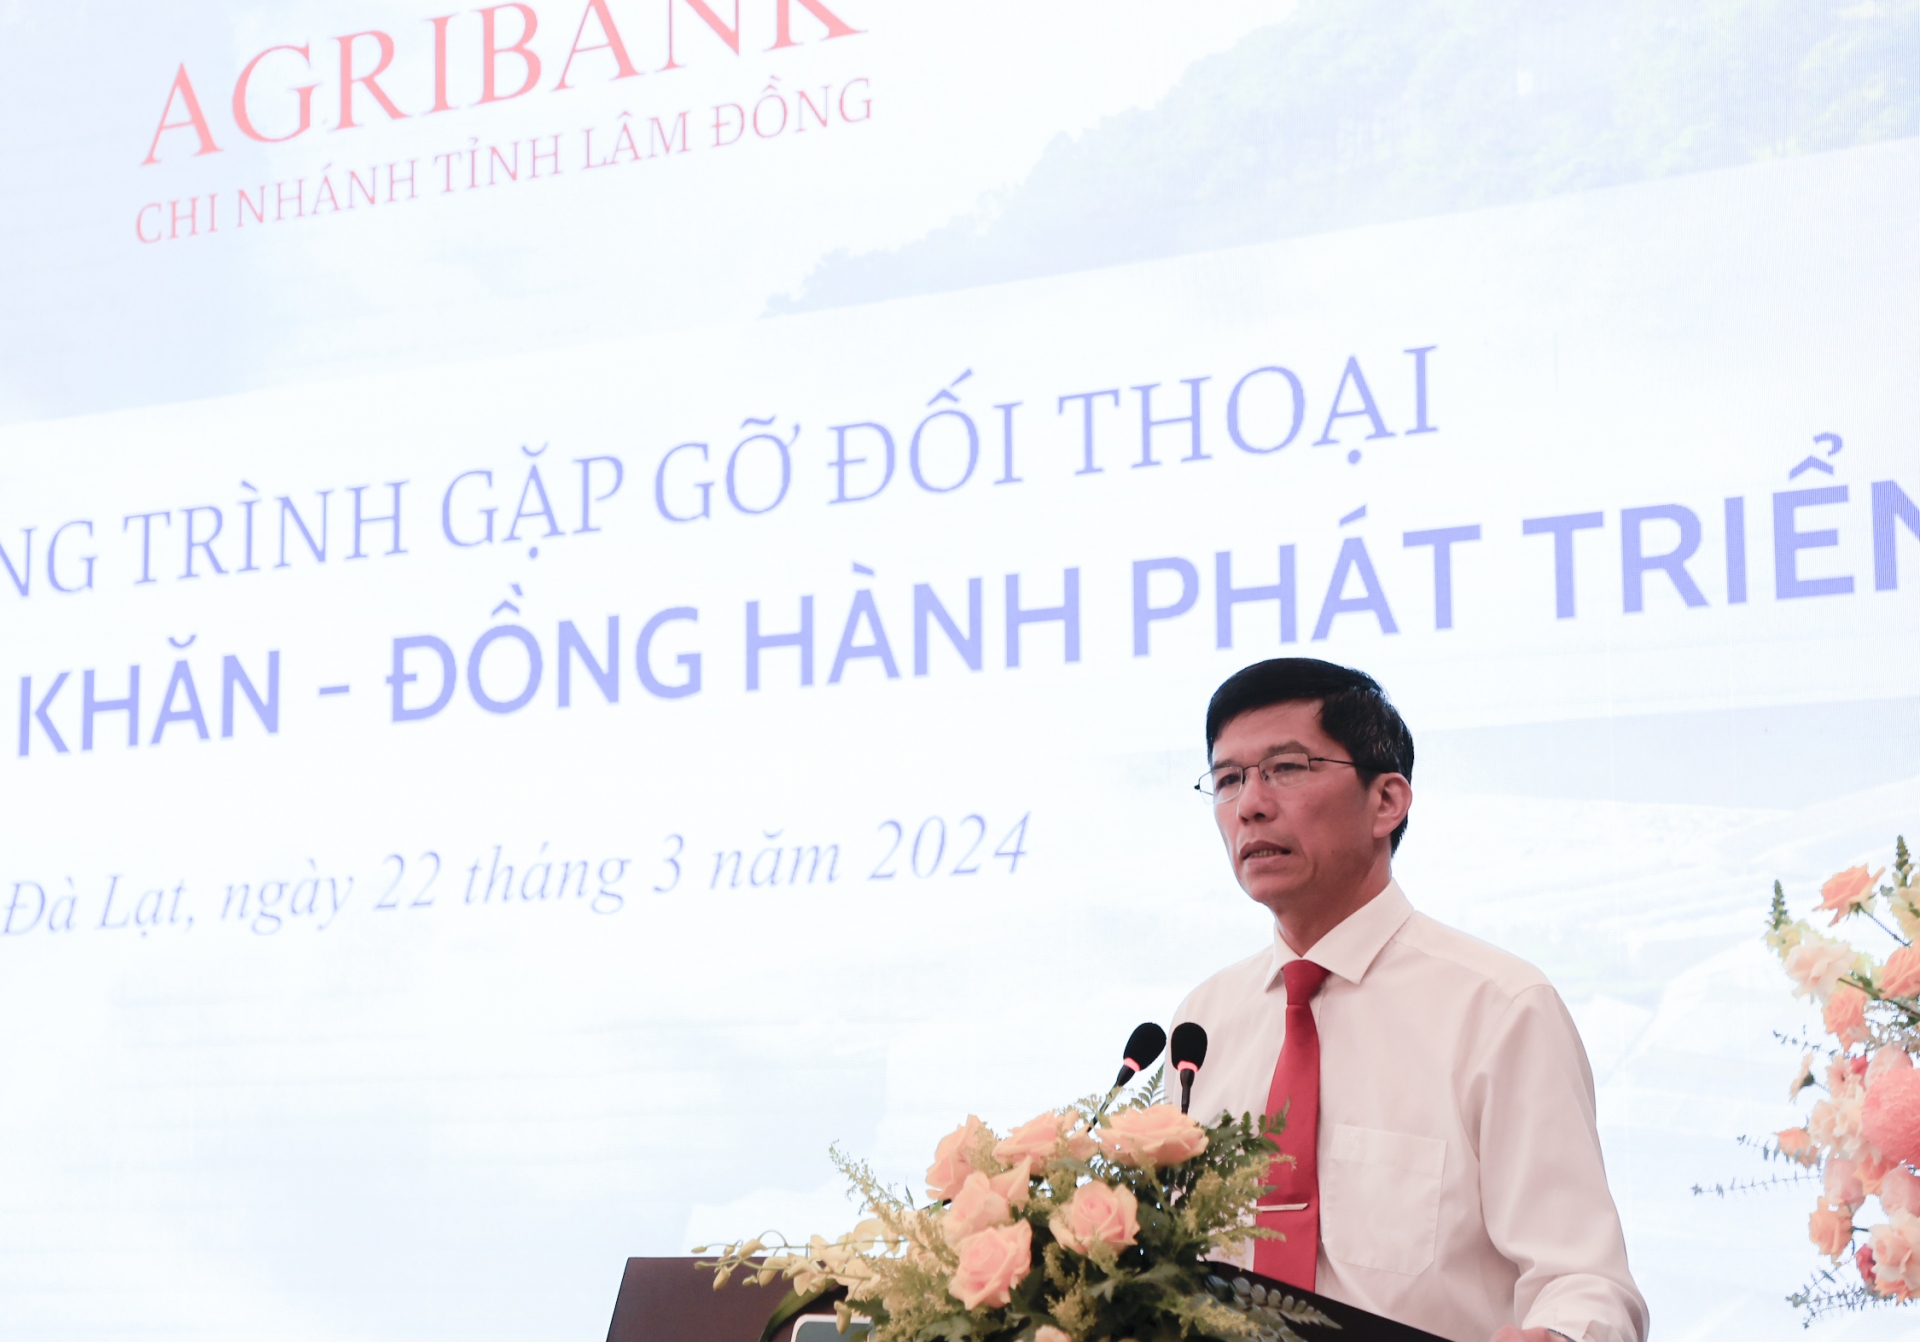 Ông Nguyễn Xuân Hoà – Giám đốc Agribank chi nhánh tỉnh Lâm Đồng